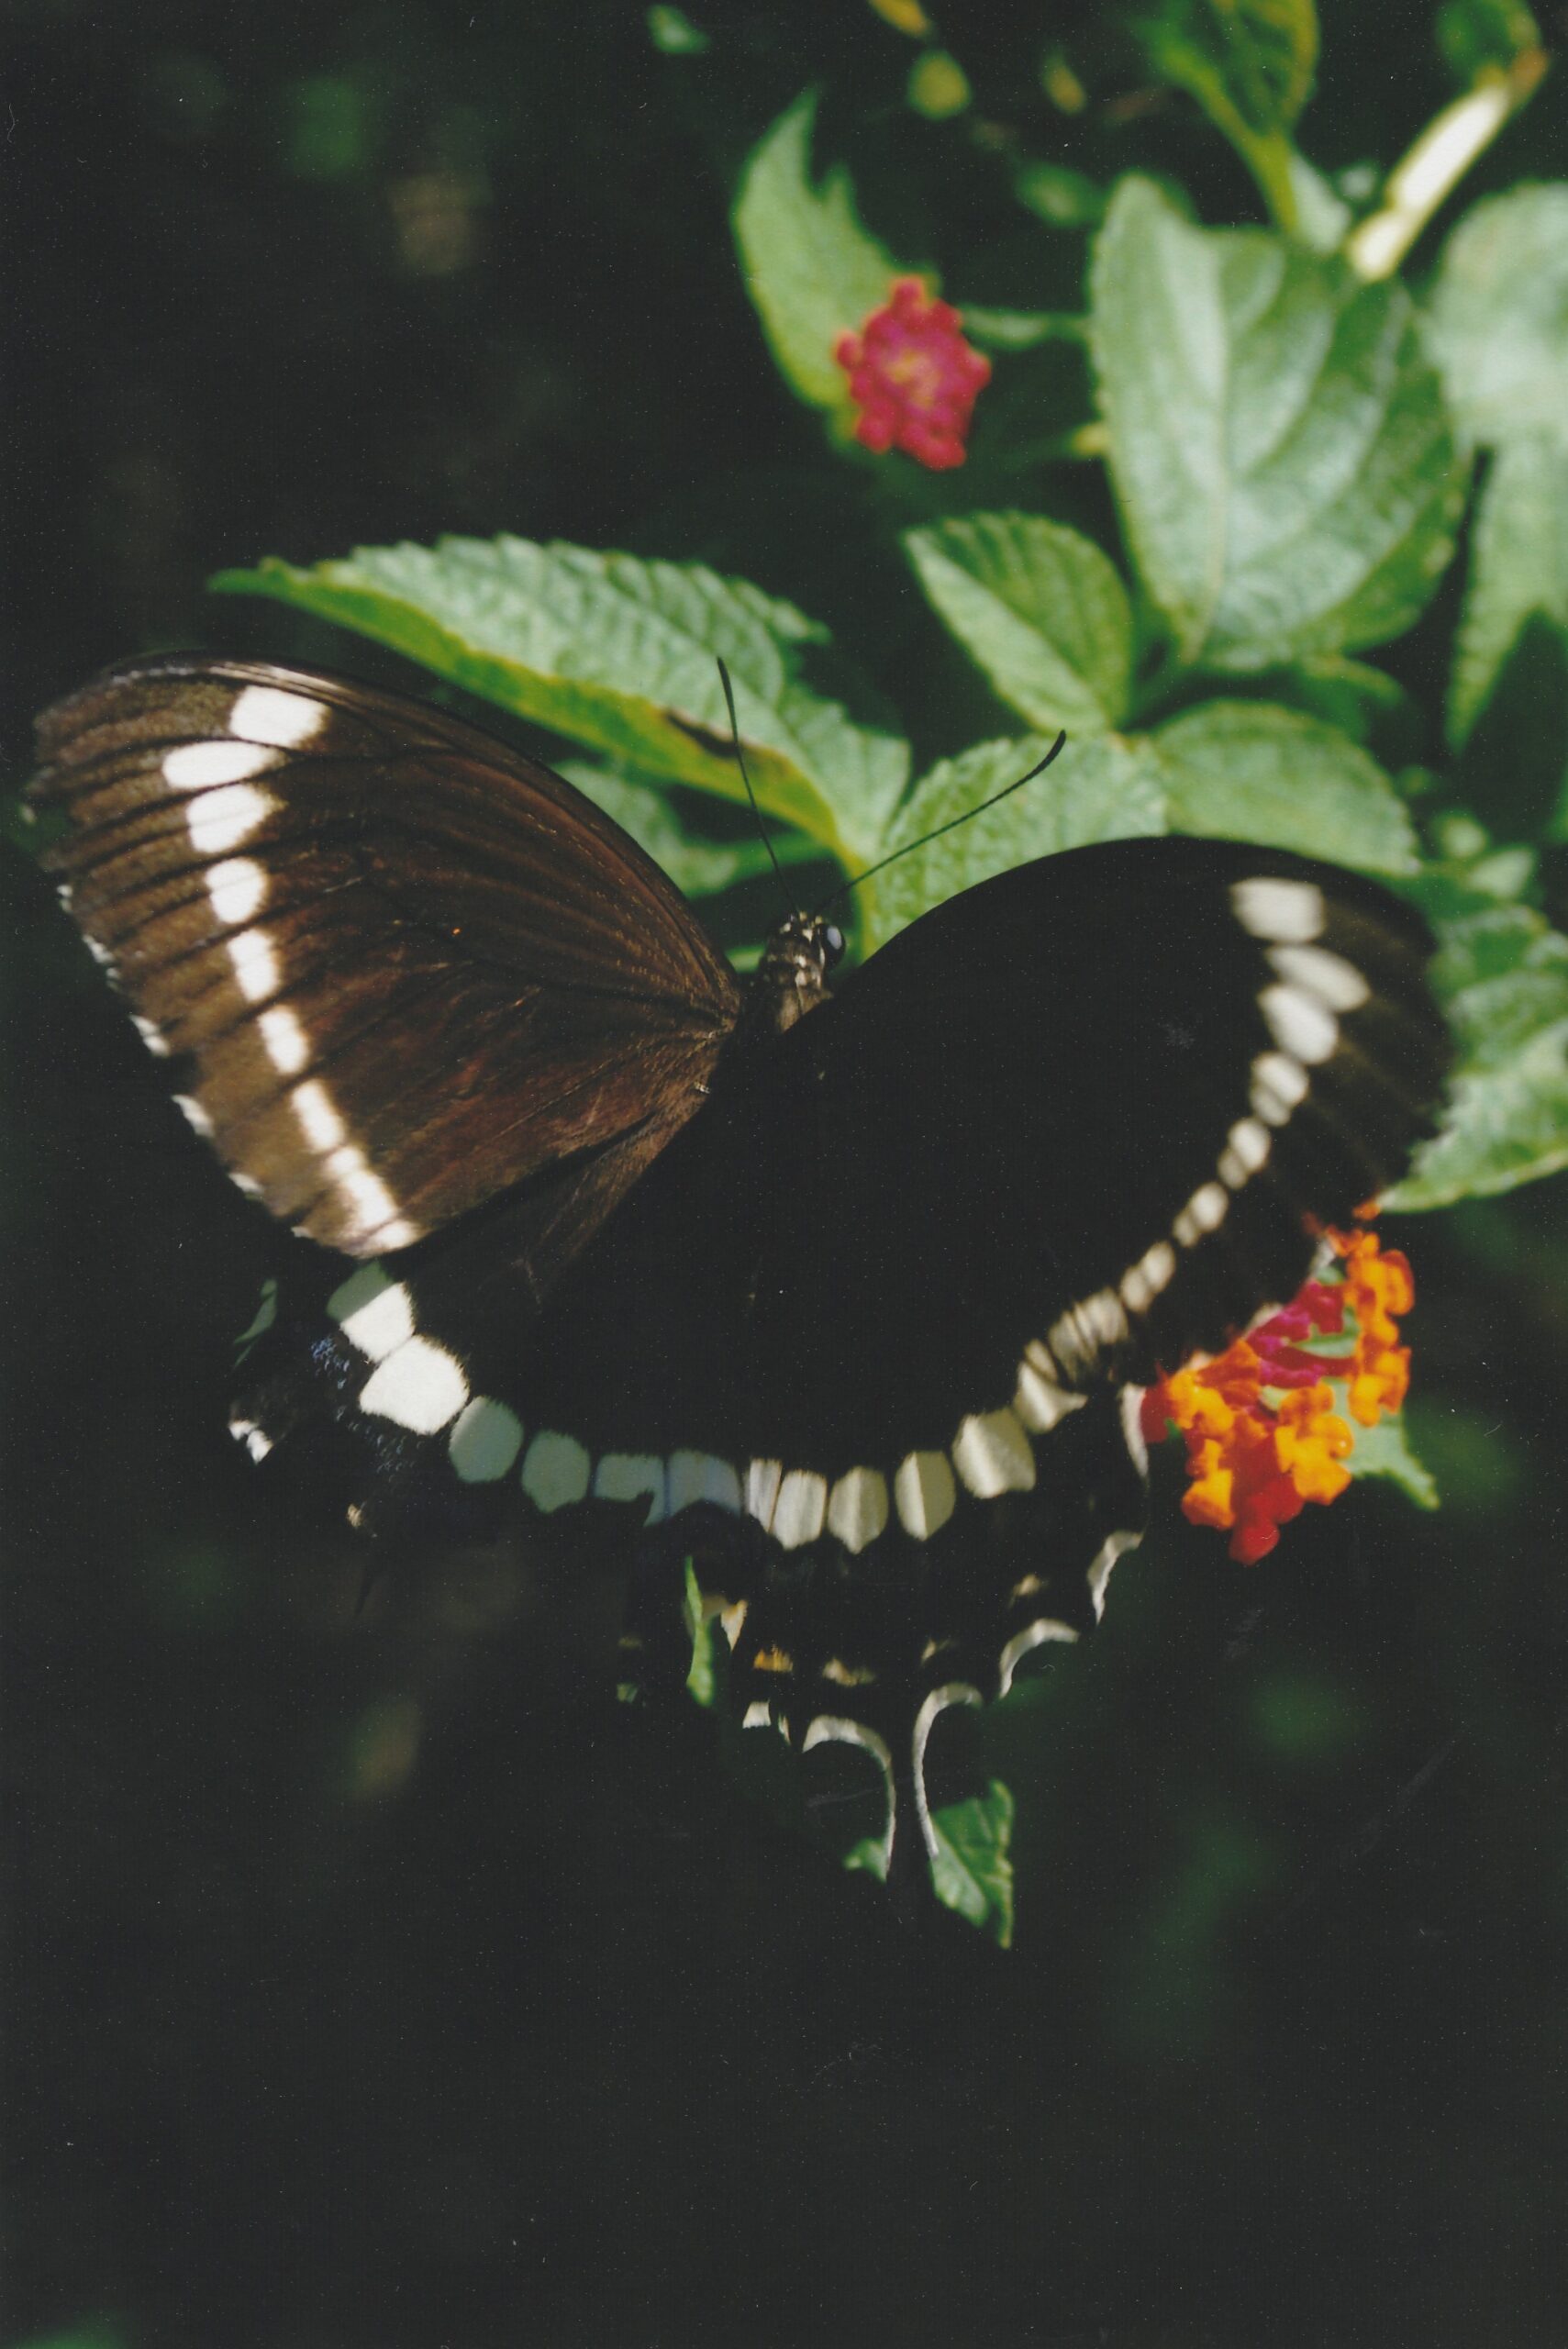 Butterfly by Merran